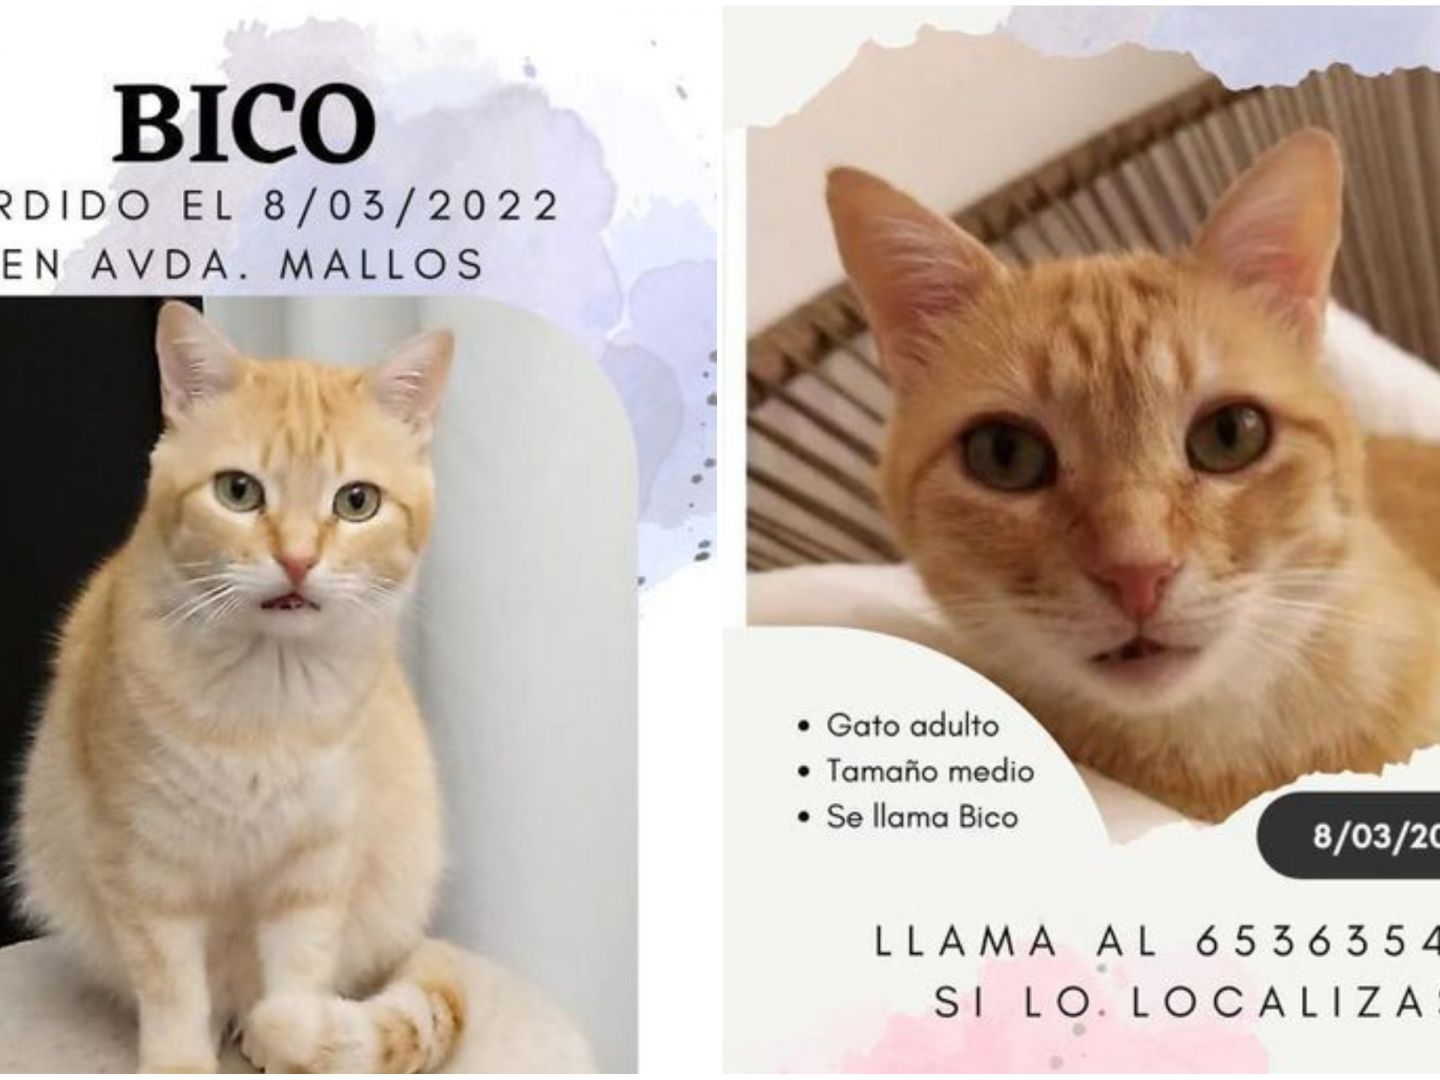 Piden ayuda para encontrar Bico, un gato perdido en la de Os Mallos en Coruña